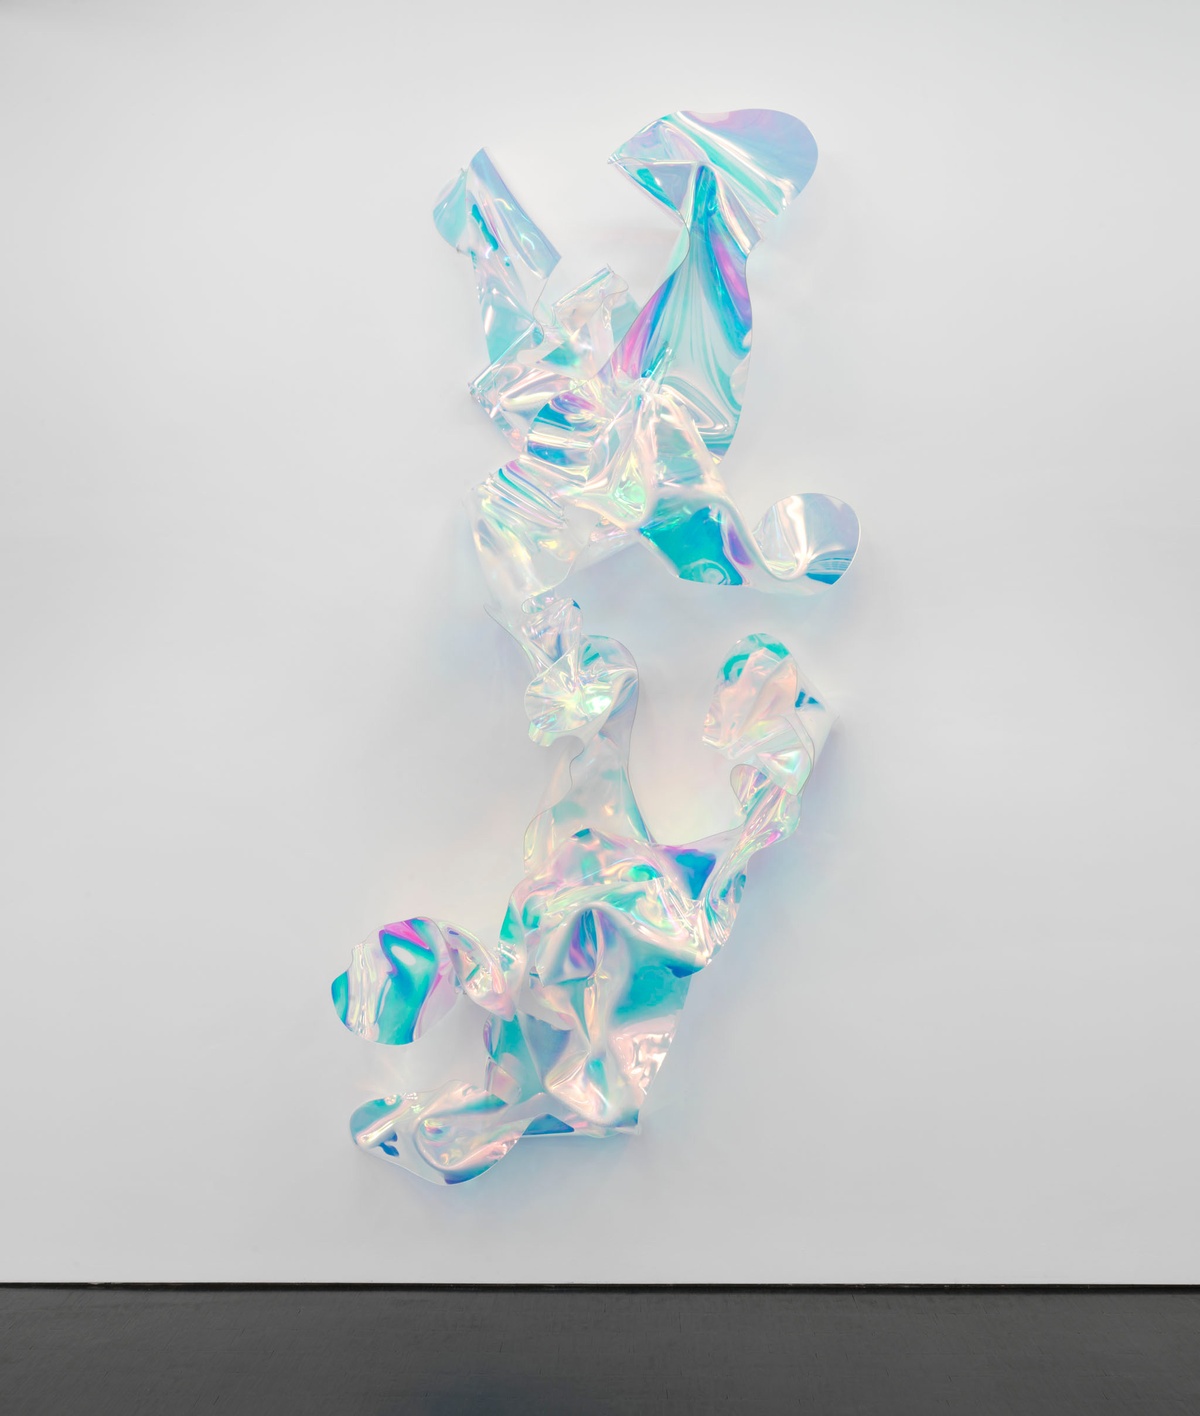 Ziwa, 2020acrylic glass284 x 140 x 41cm